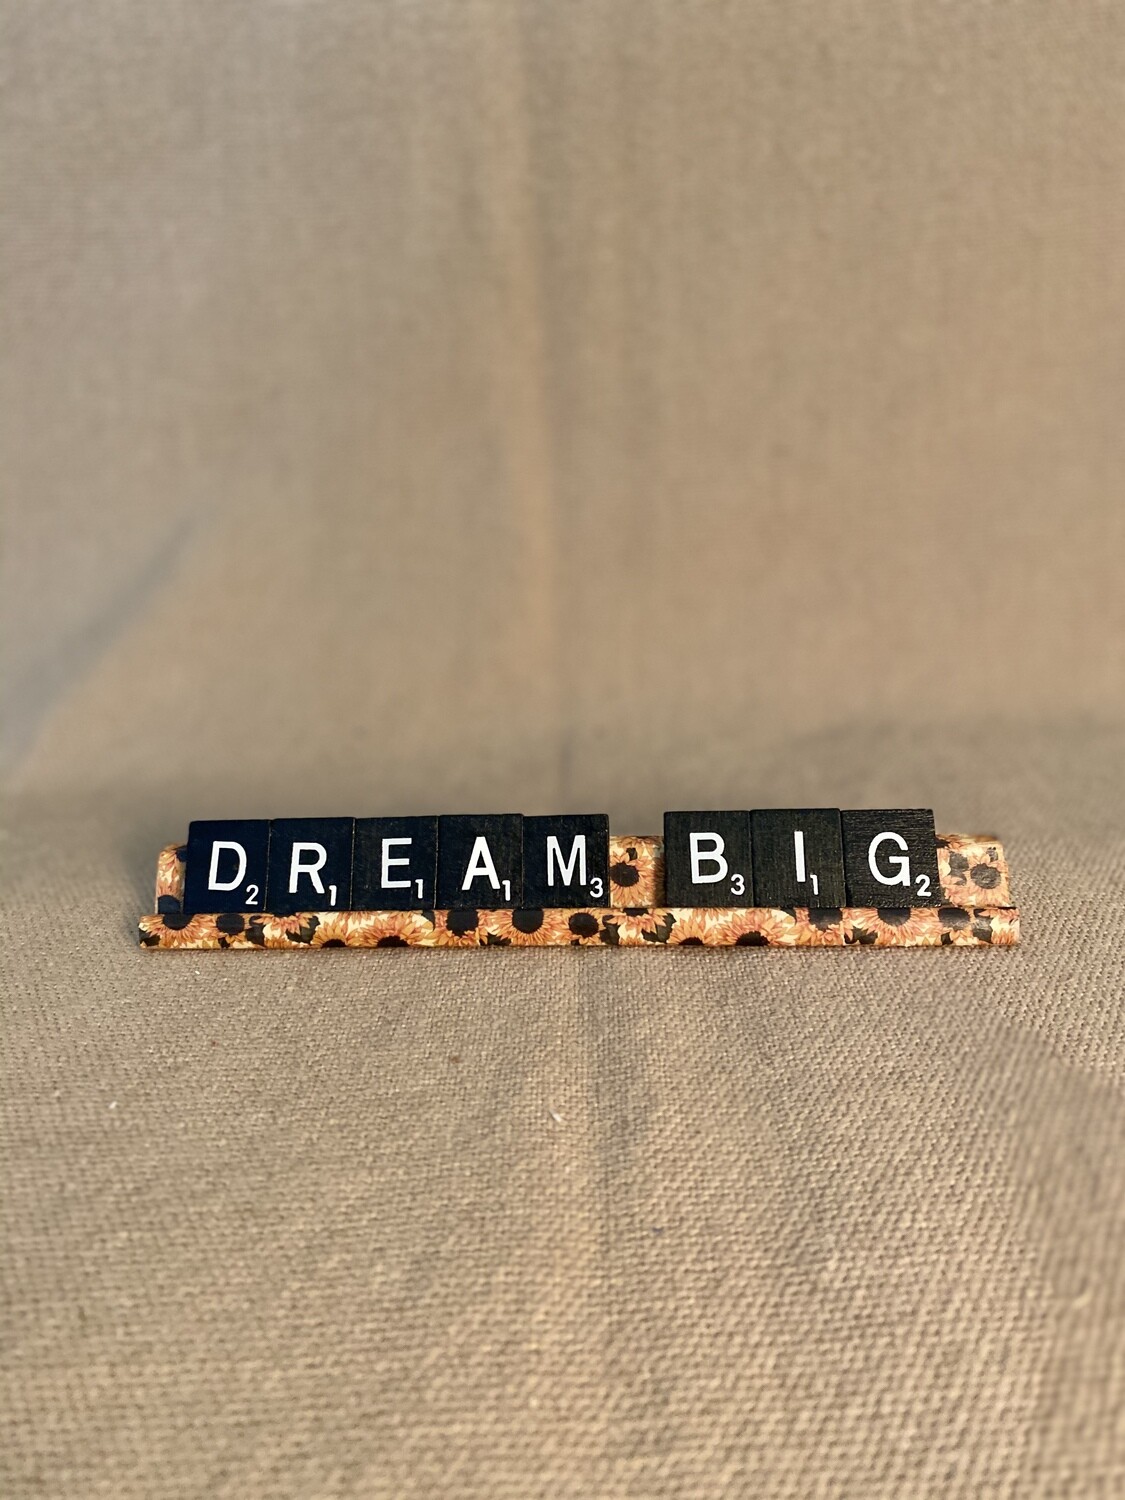 Dream Big Lg. Decorative Scrabble Tray 7&quot;L x 0.75&quot;H